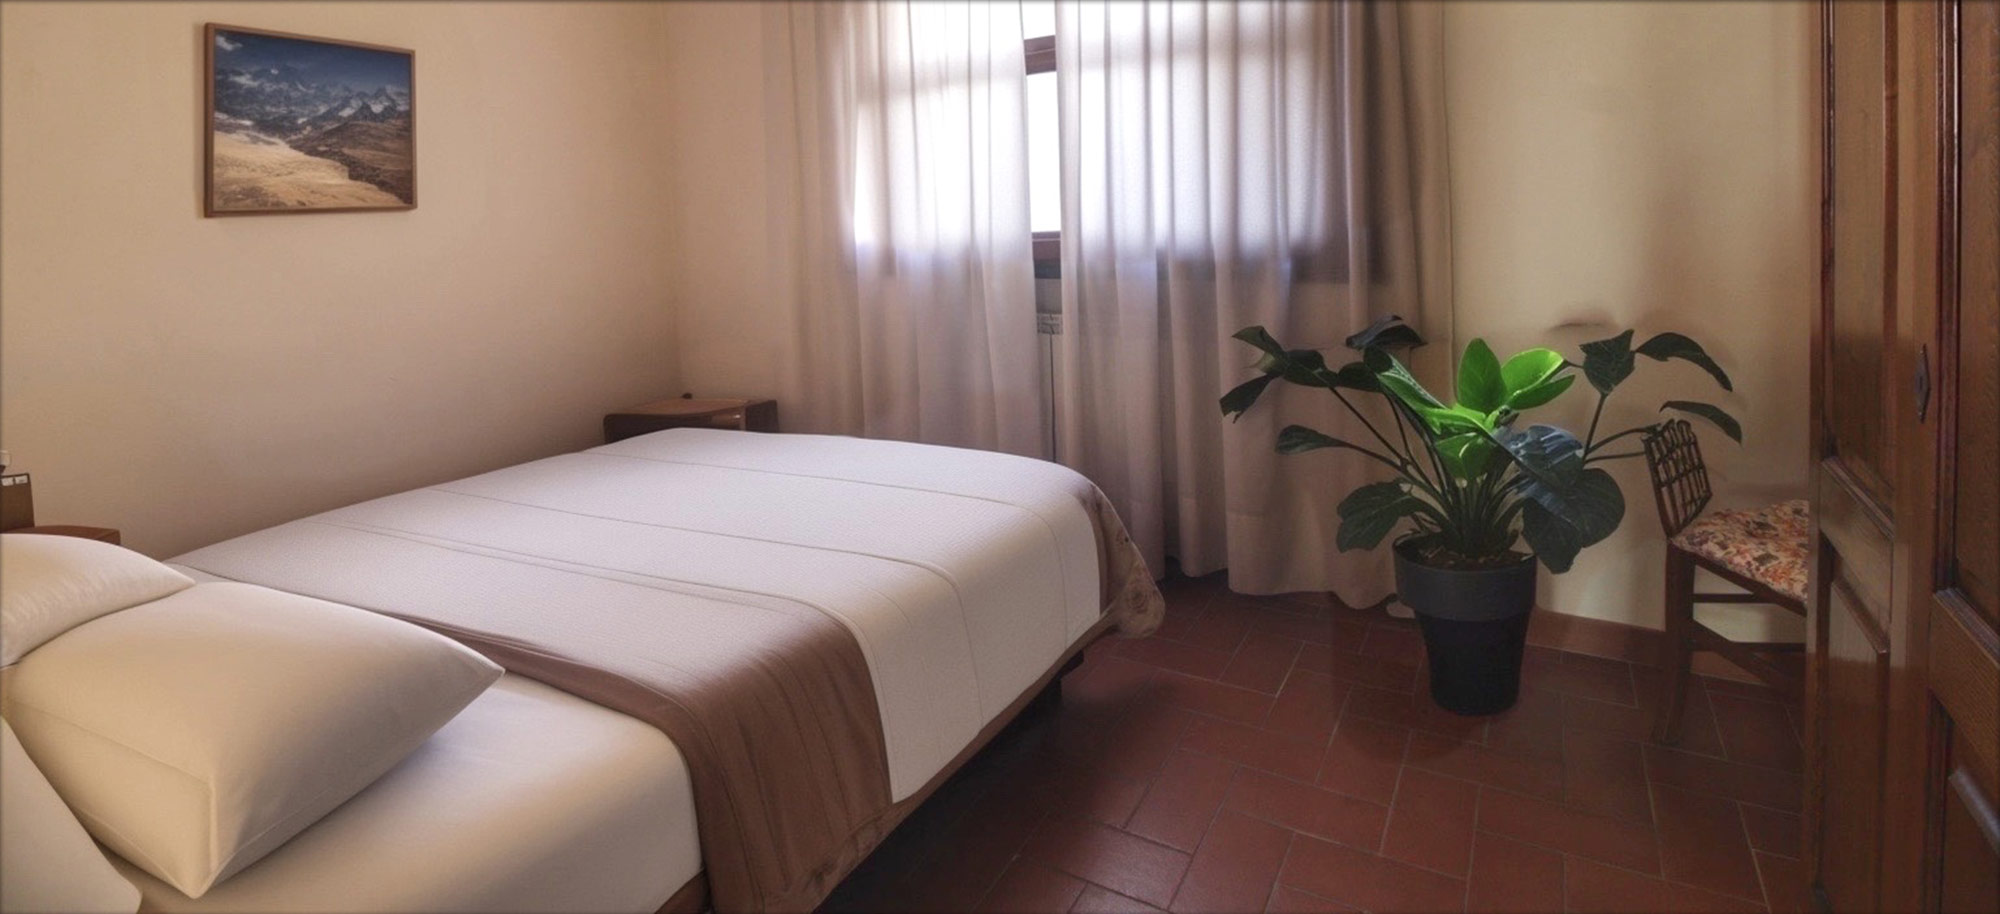 Corte Tommasi - Residence turistico - 106 - Appartamento per vacanze con piscina in Toscana